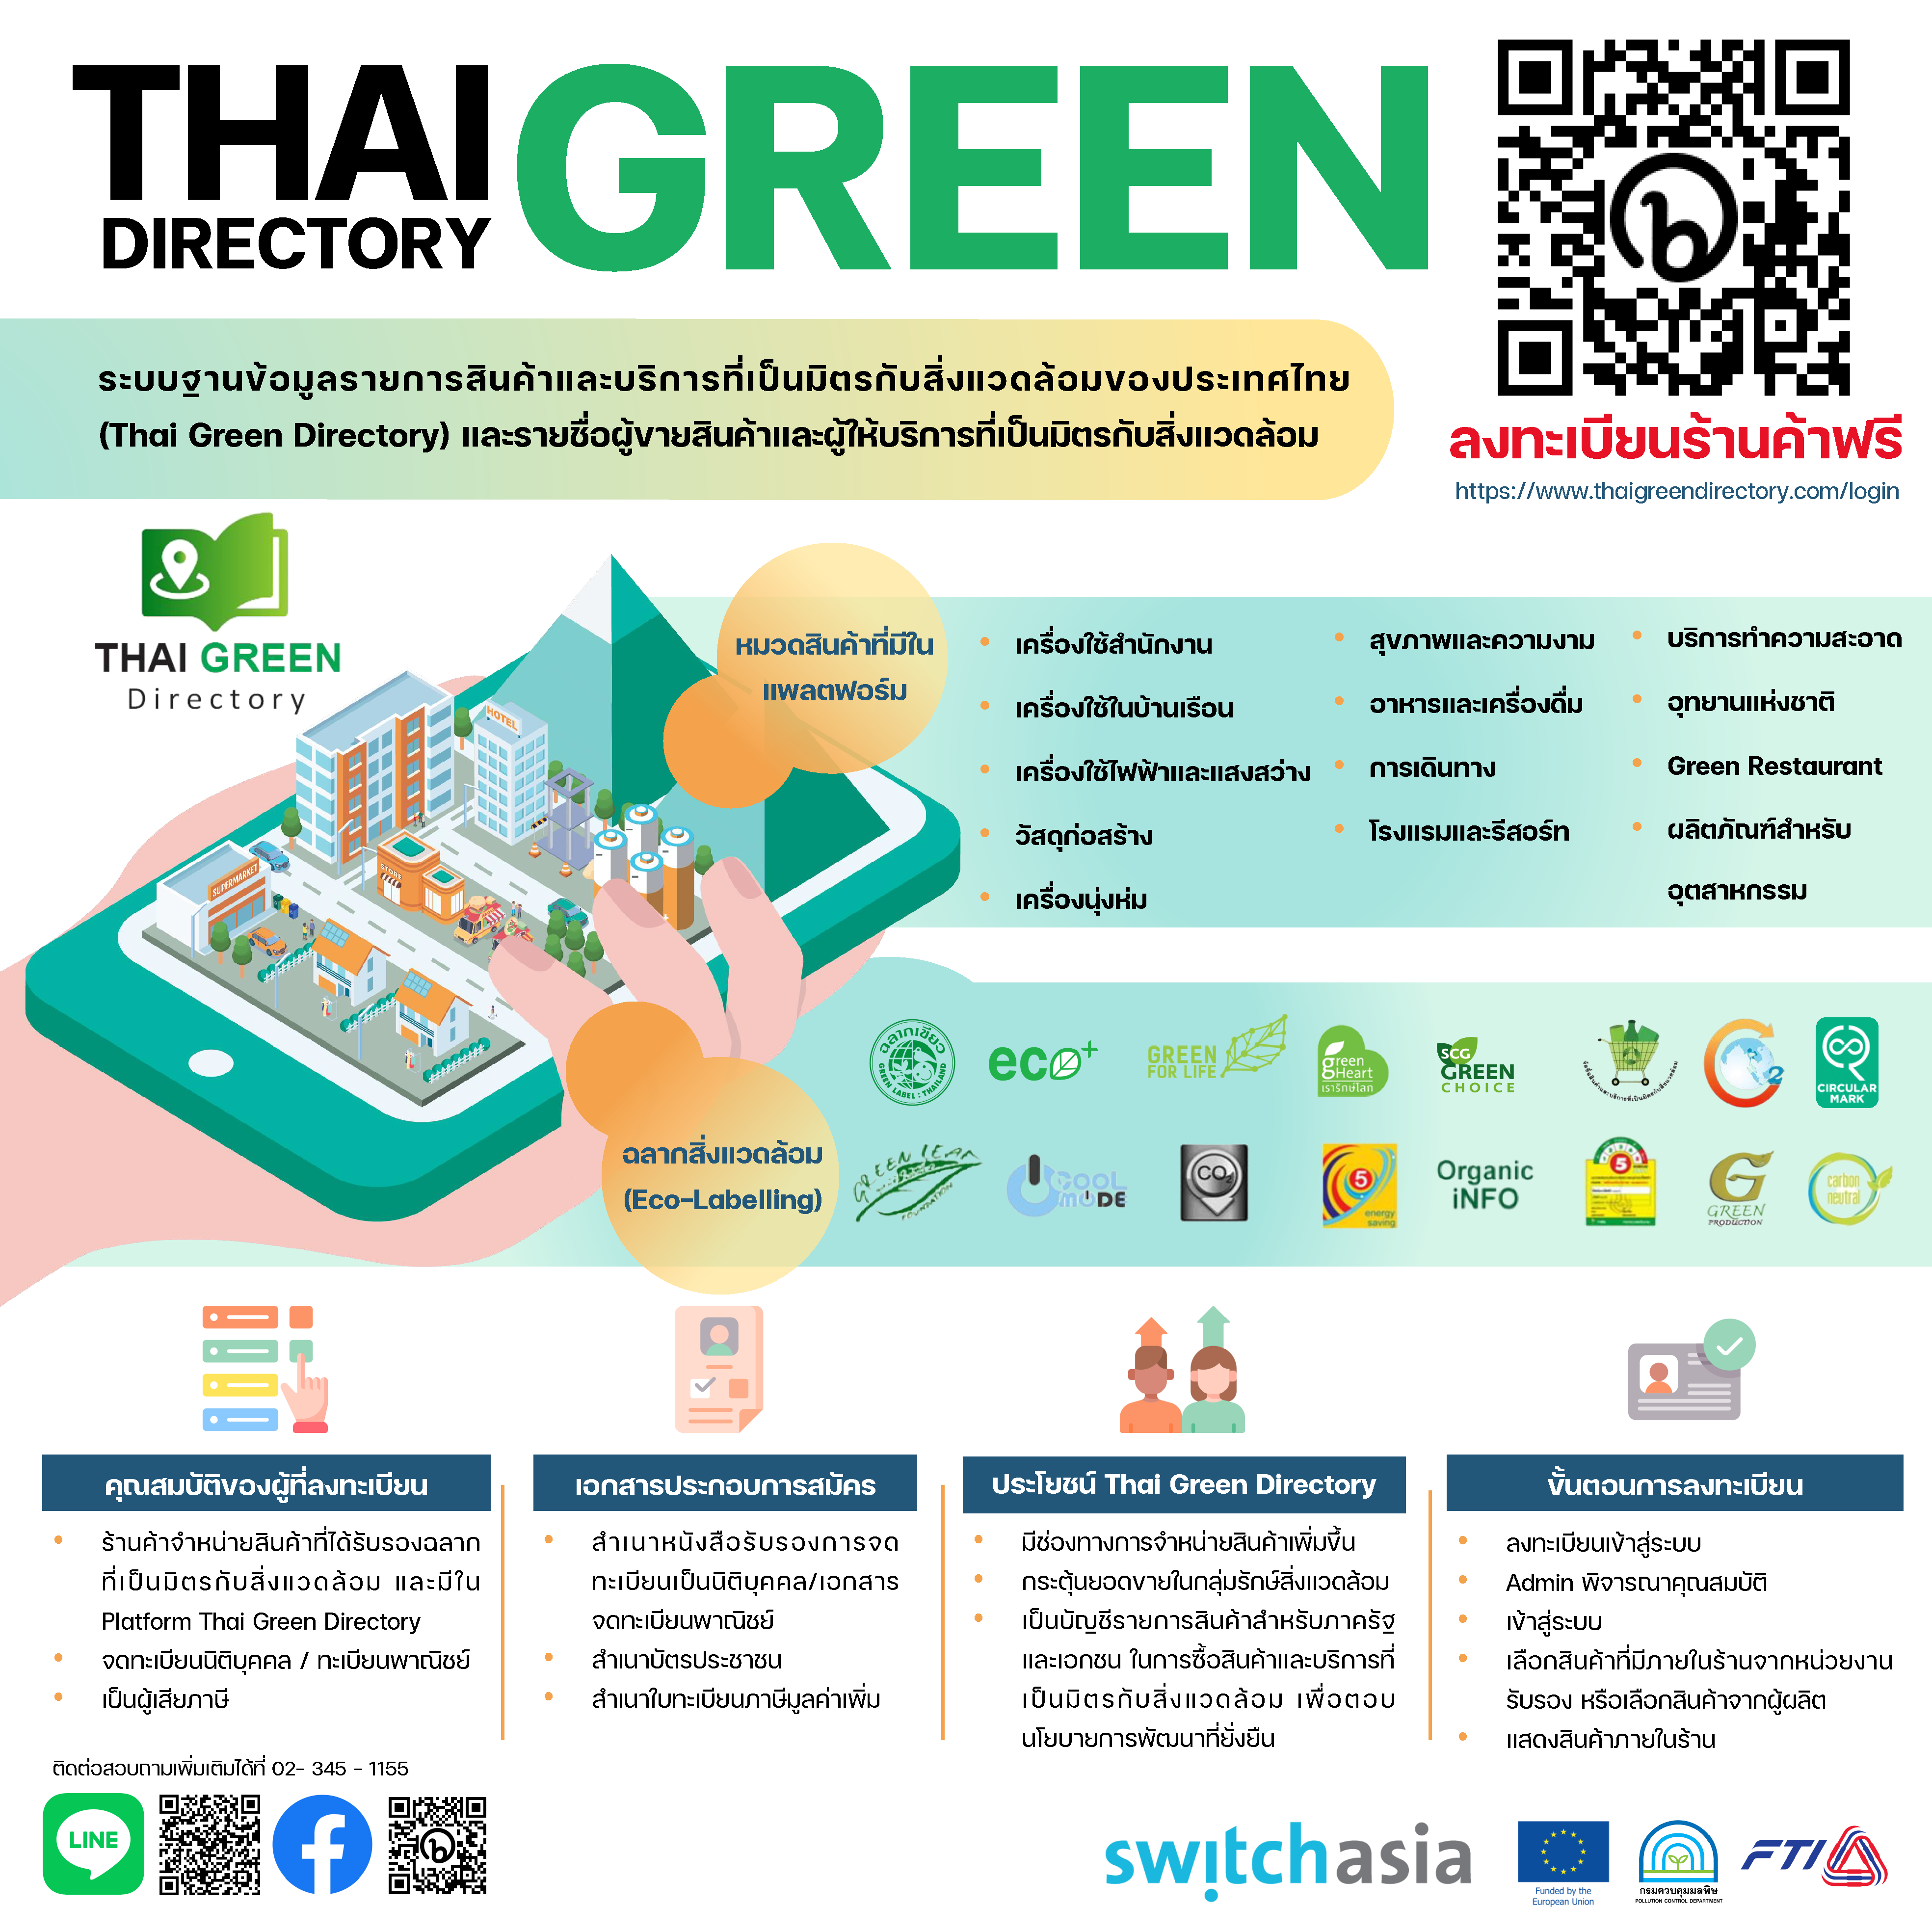 TGD คือระบบฐานข้อมูลรายการสินค้าและบริการที่เป็นมิตรกับสิ่งแวดล้อมของประเทศไทย (Thai Green Directory) และรายชื่อผู้ขายสินค้าและผู้ให้บริการที่เป็นมิตรกับสิ่งแวดล้อม